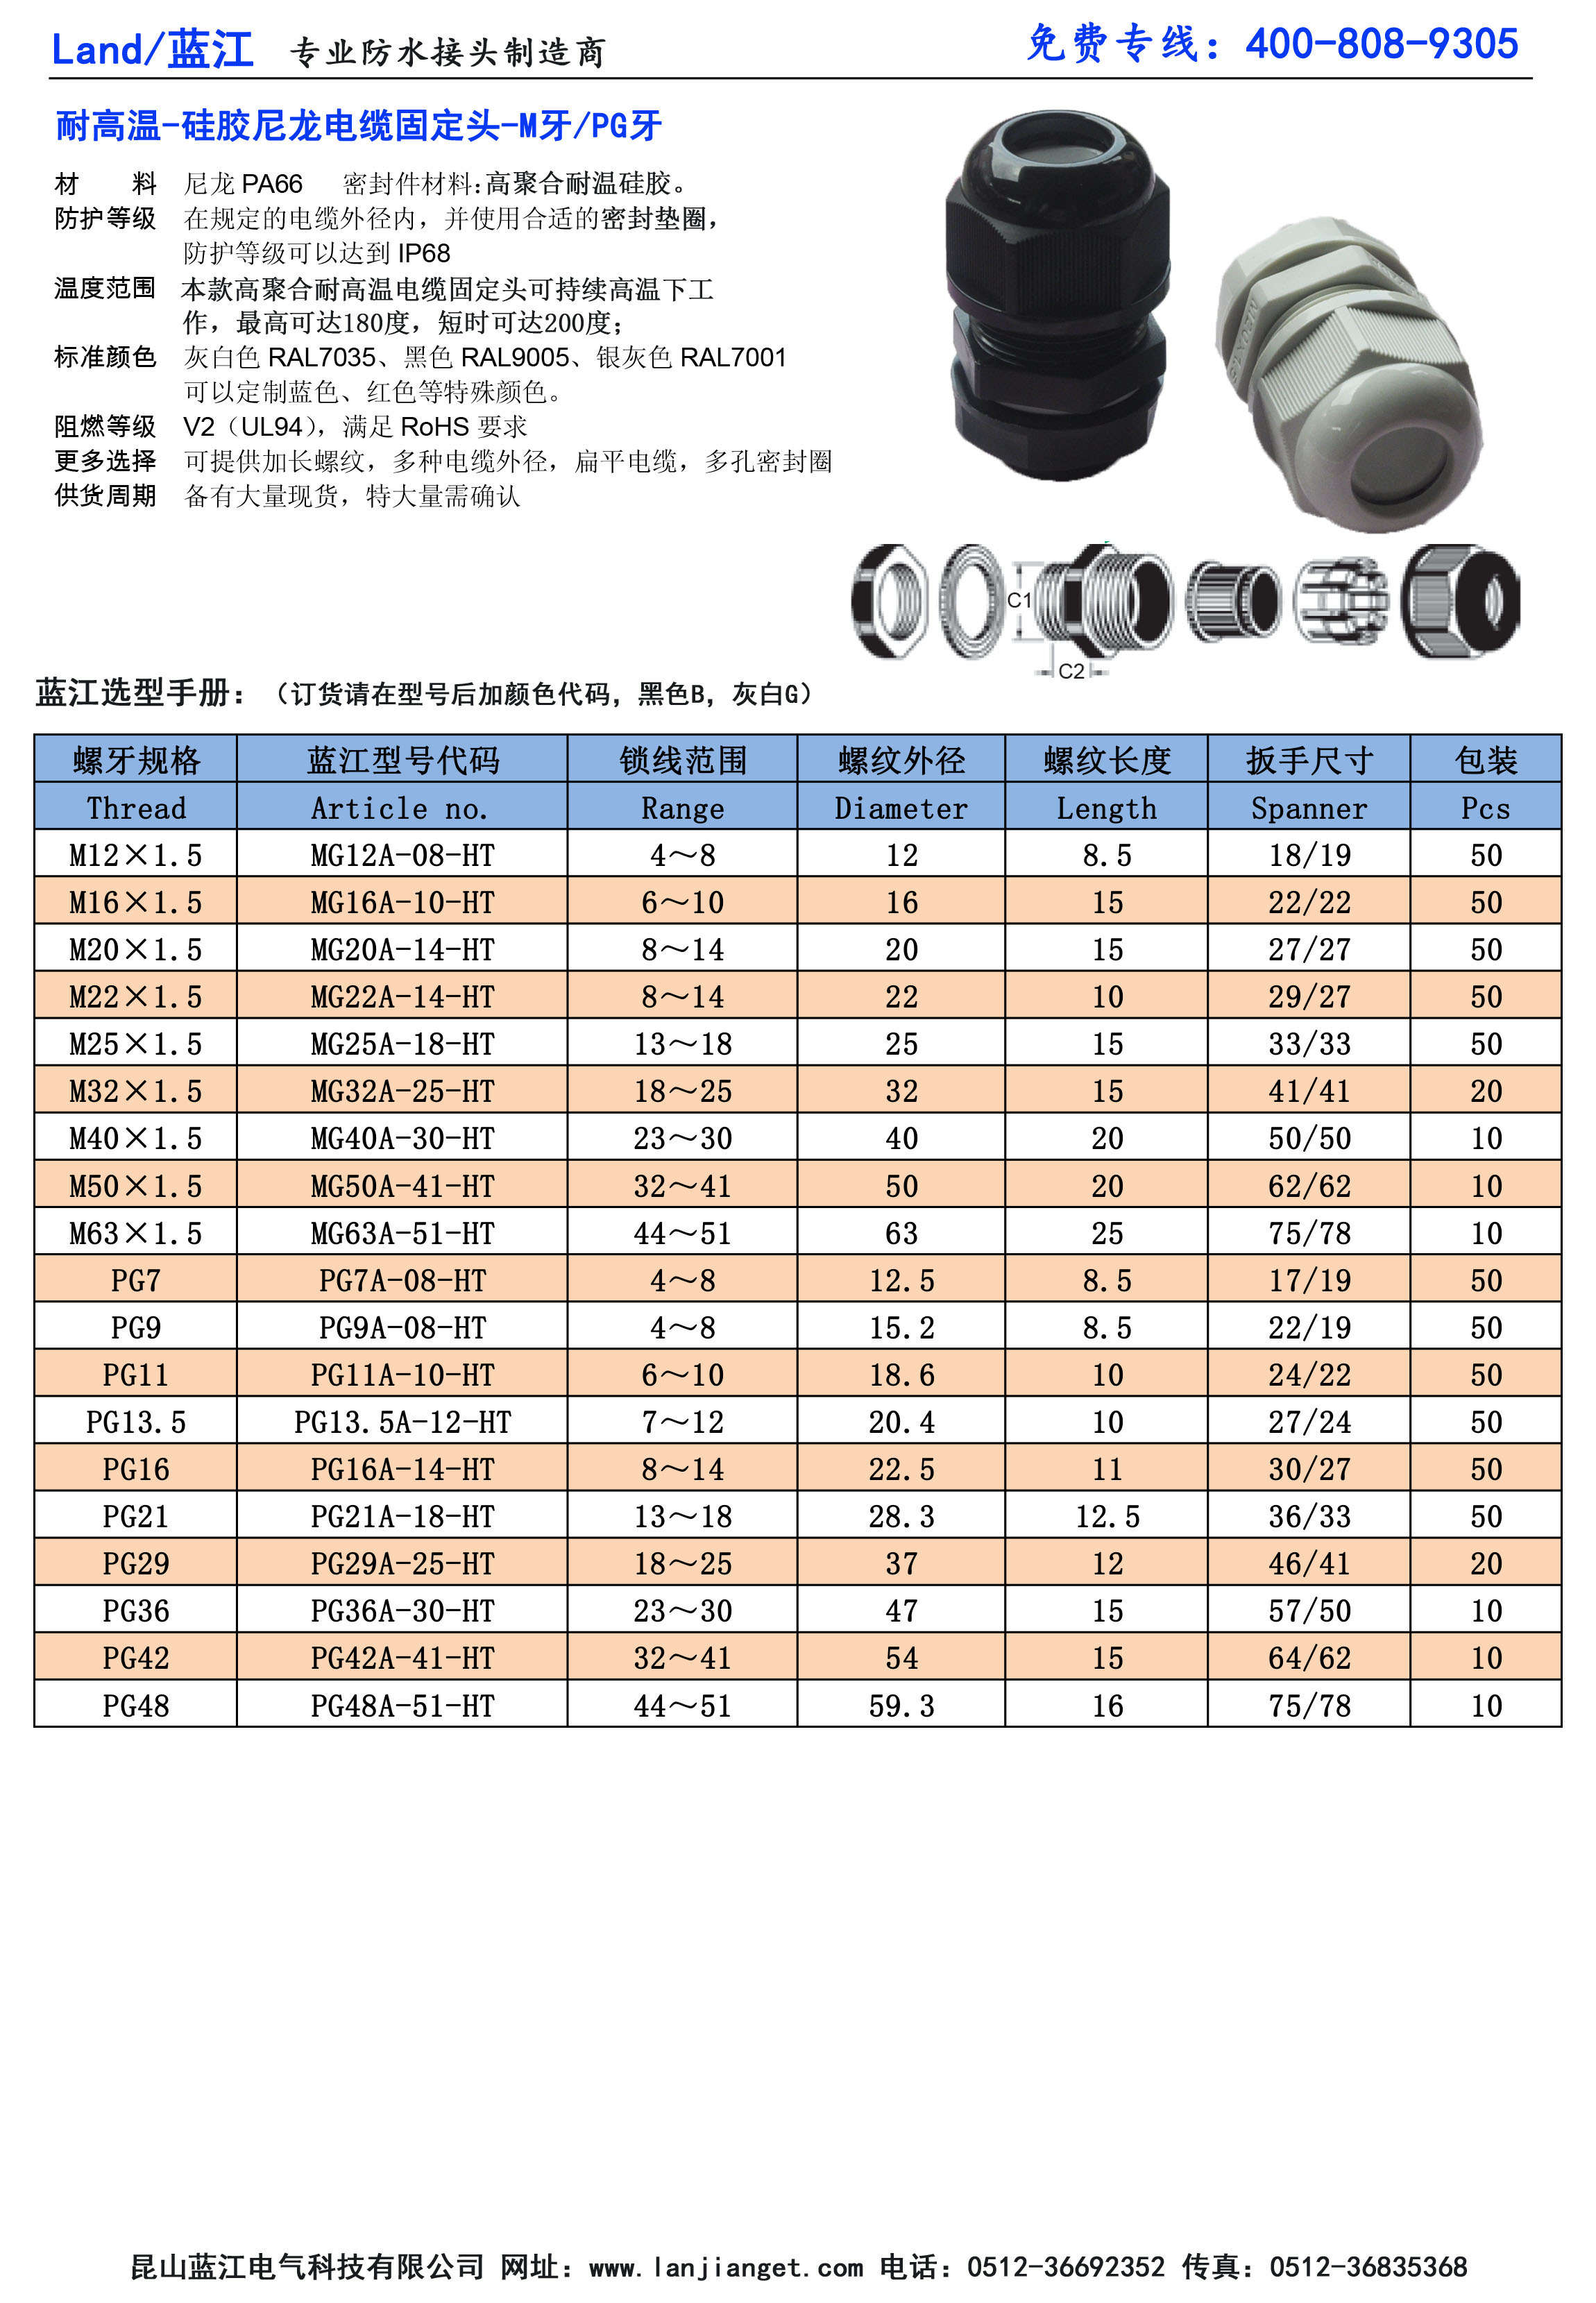 蓝江品牌 M20尼龙耐高温电缆固定头 厂家现货 电缆固定头,耐高温固定头,耐高温格兰头,耐高温电缆接头,耐高温防水接头